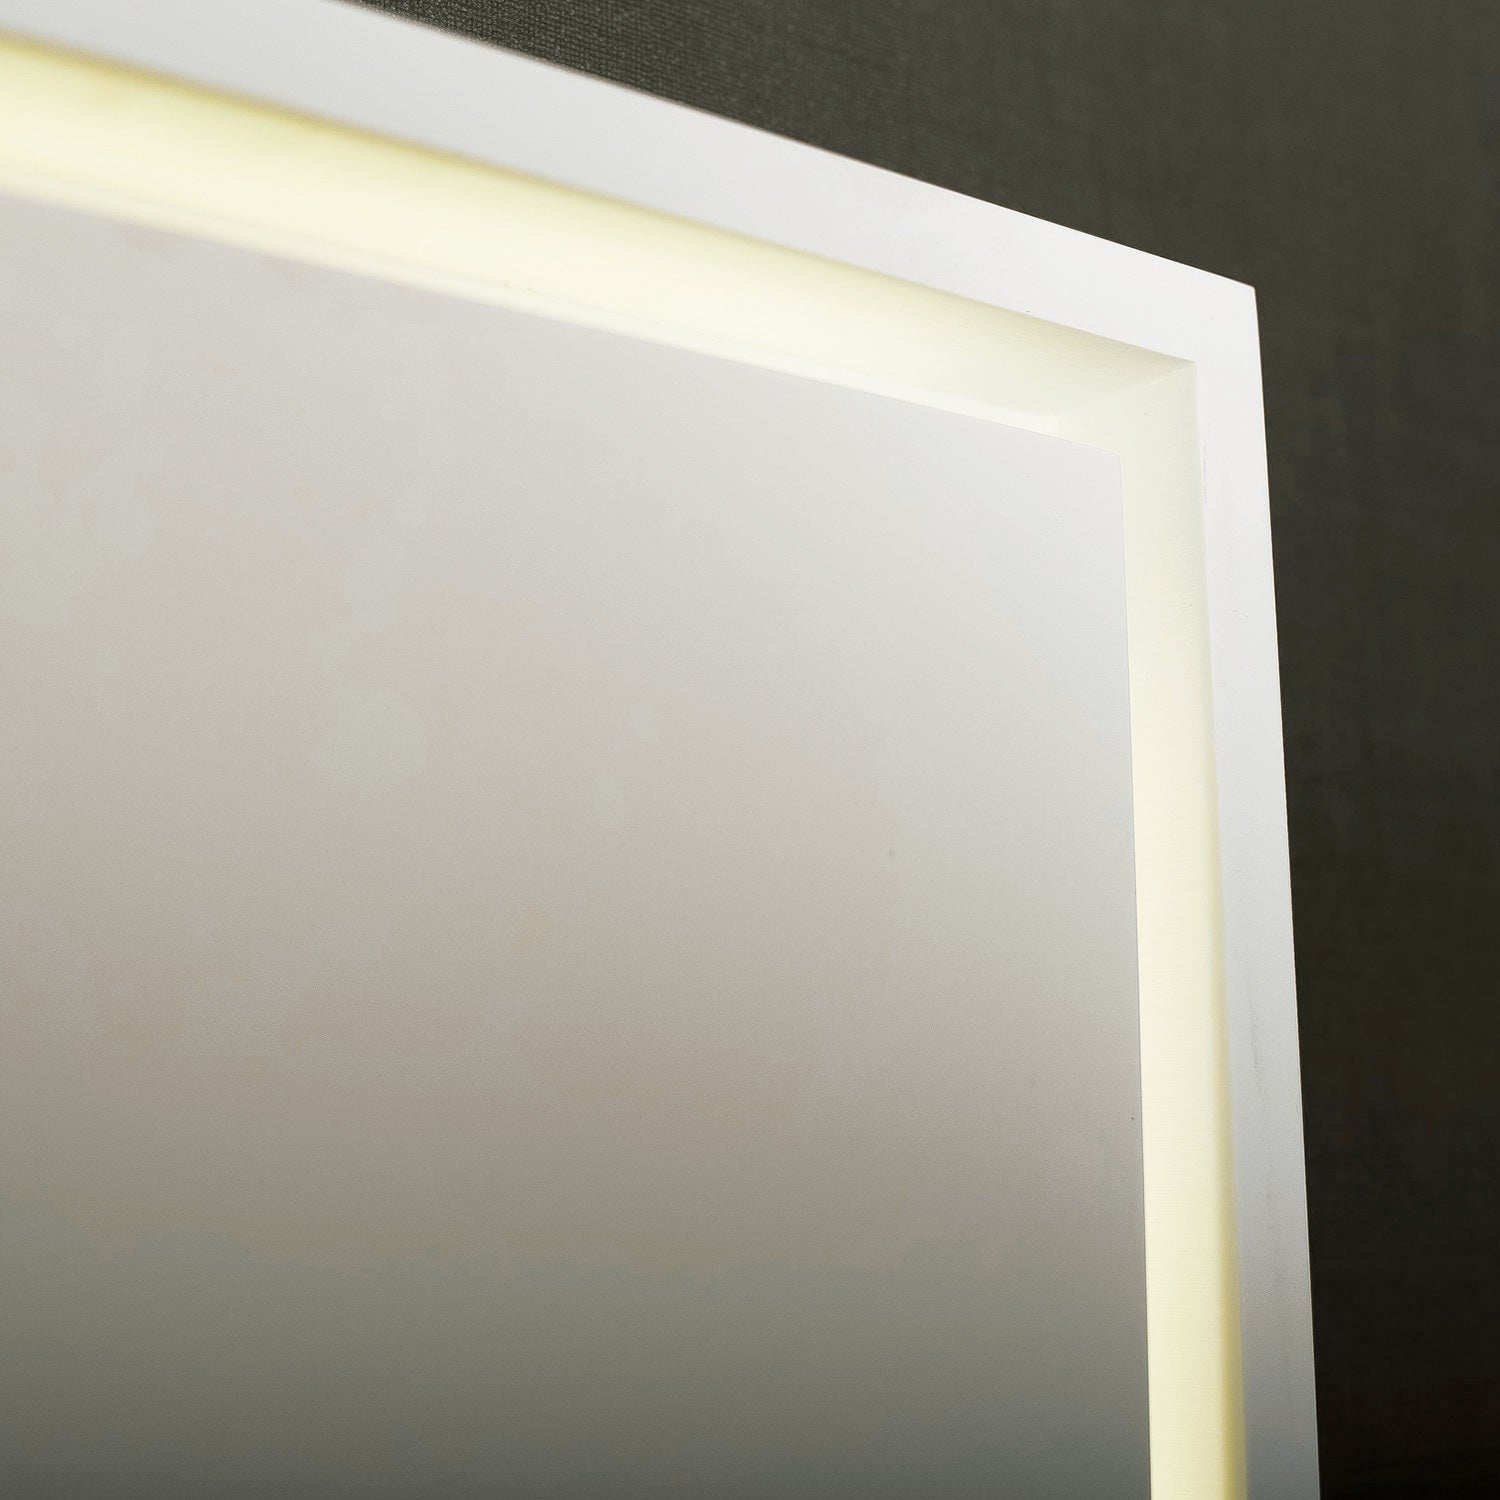 DAX Espejo de tocador de baño con retroiluminación LED rectangular de superficie sólida, montaje en pared, 46-7/16 x 23-2/3 x 1-3/8 pulgadas (DAX-AB-1570)